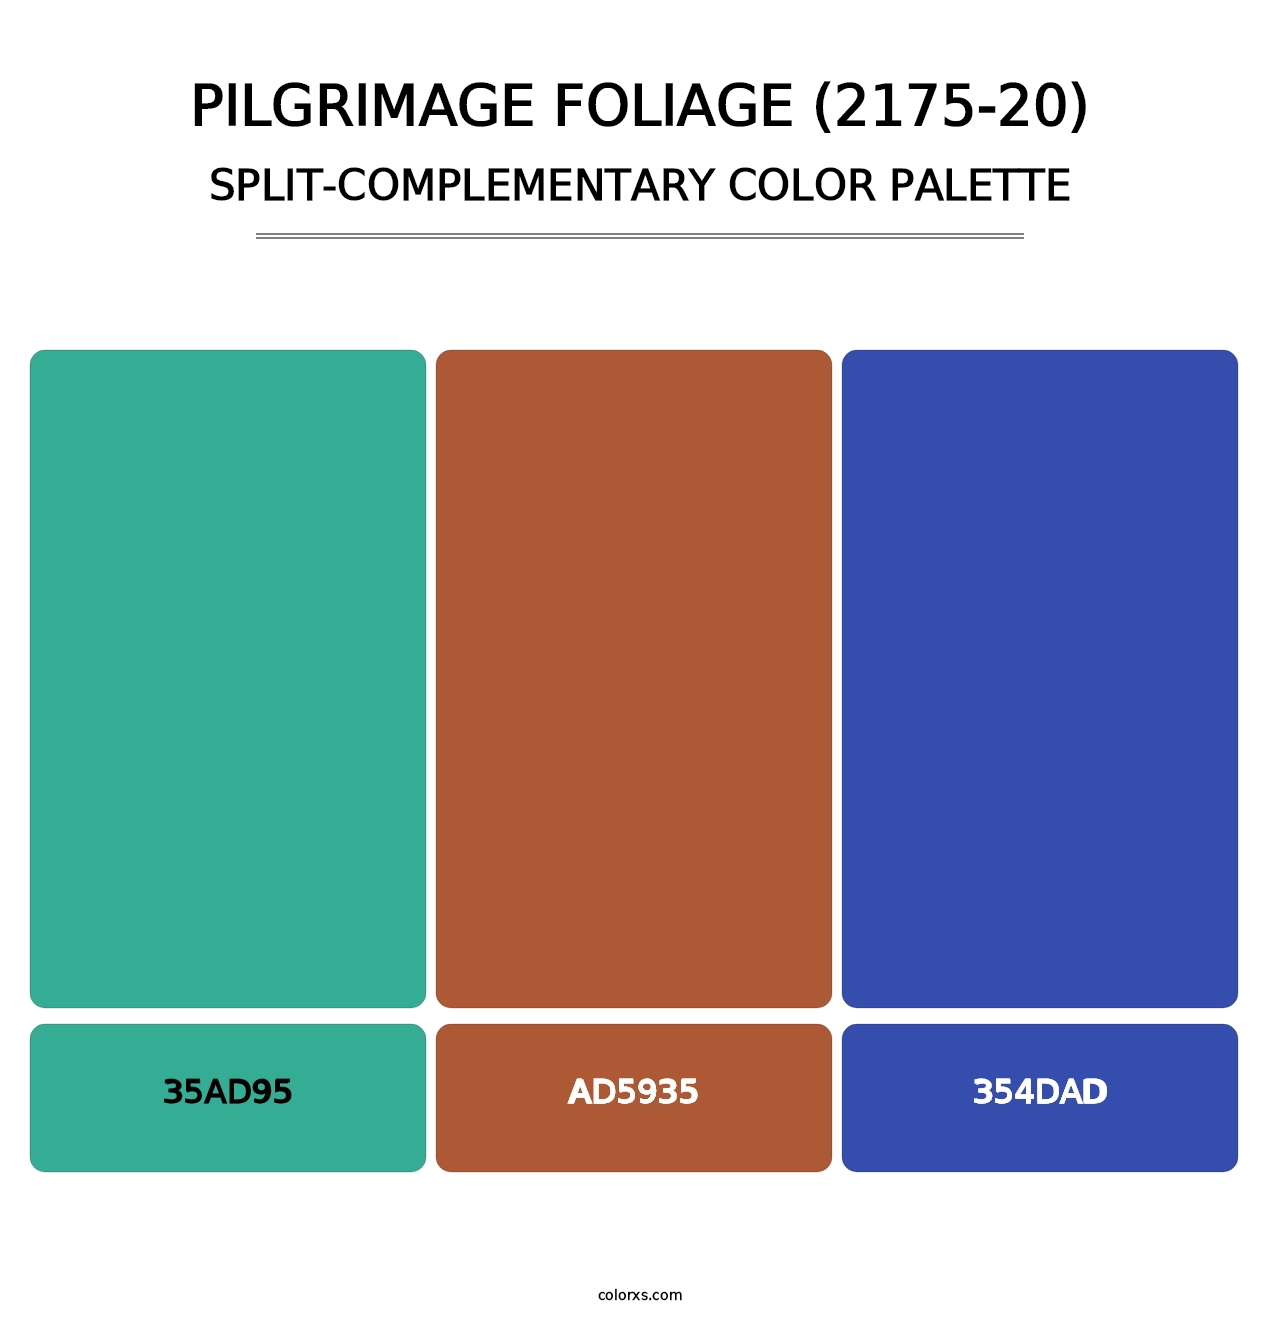 Pilgrimage Foliage (2175-20) - Split-Complementary Color Palette